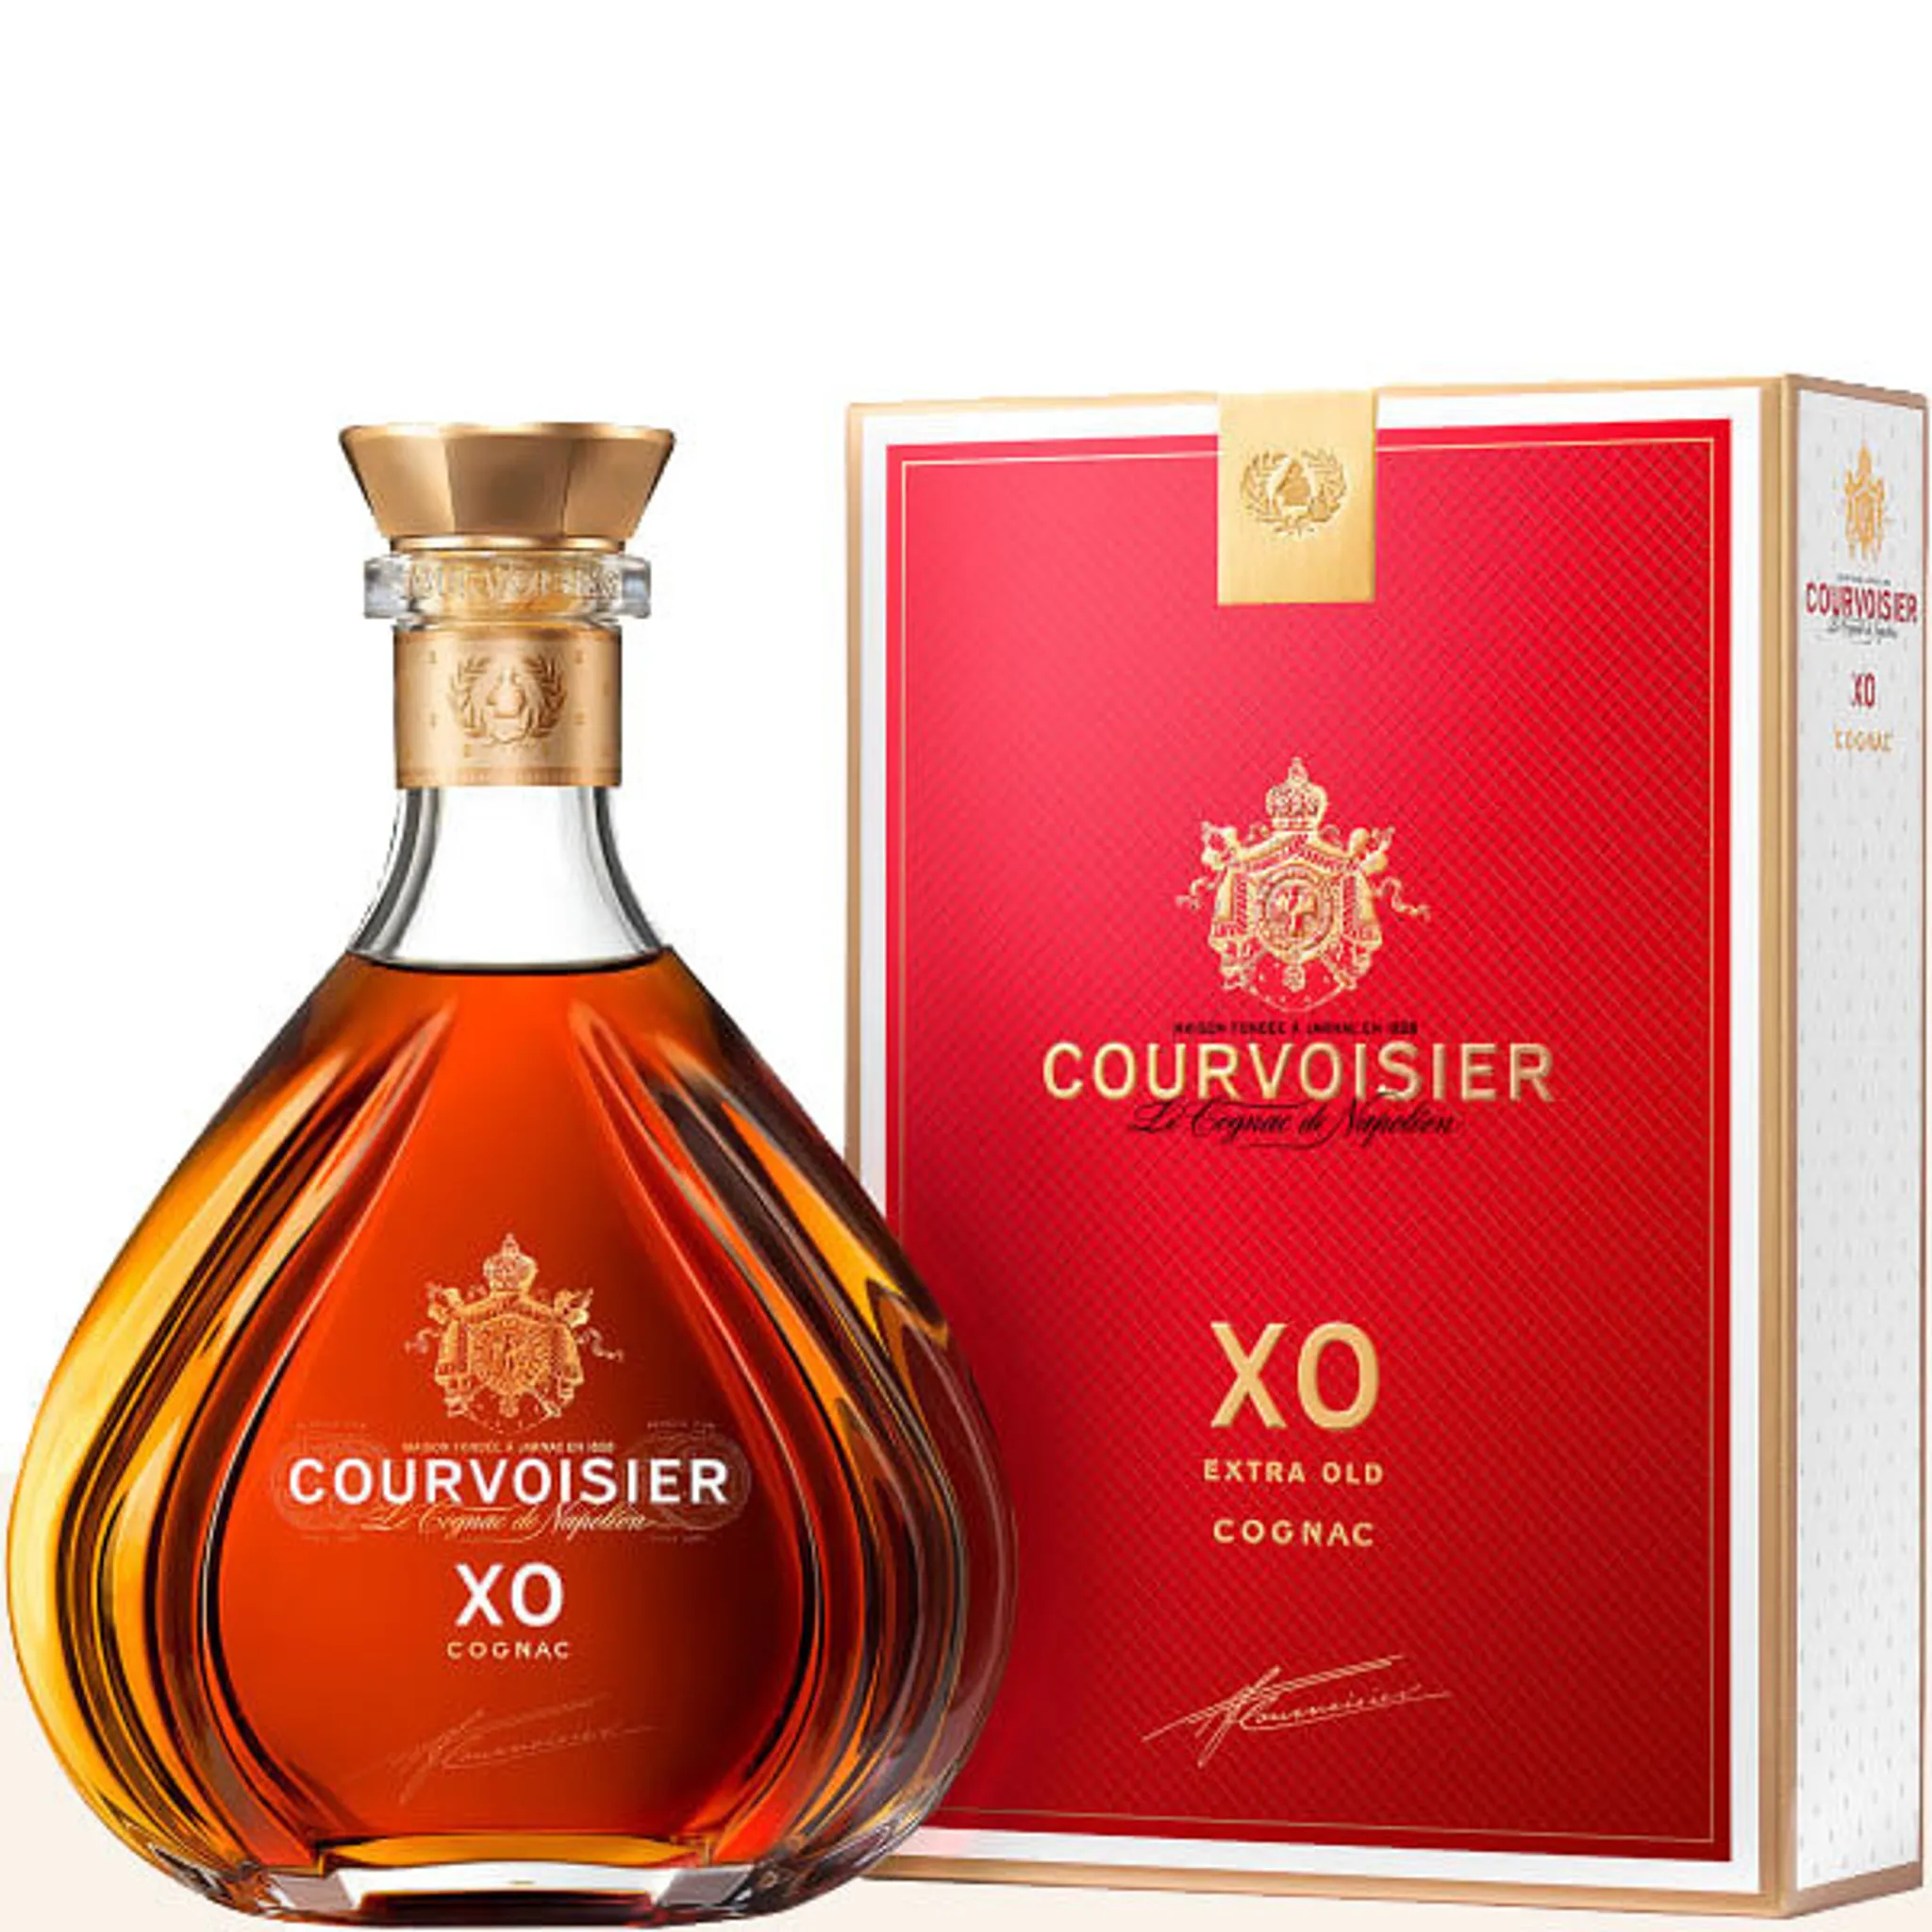 40% 0,7l XO Courvoisier Cognac in Vol.